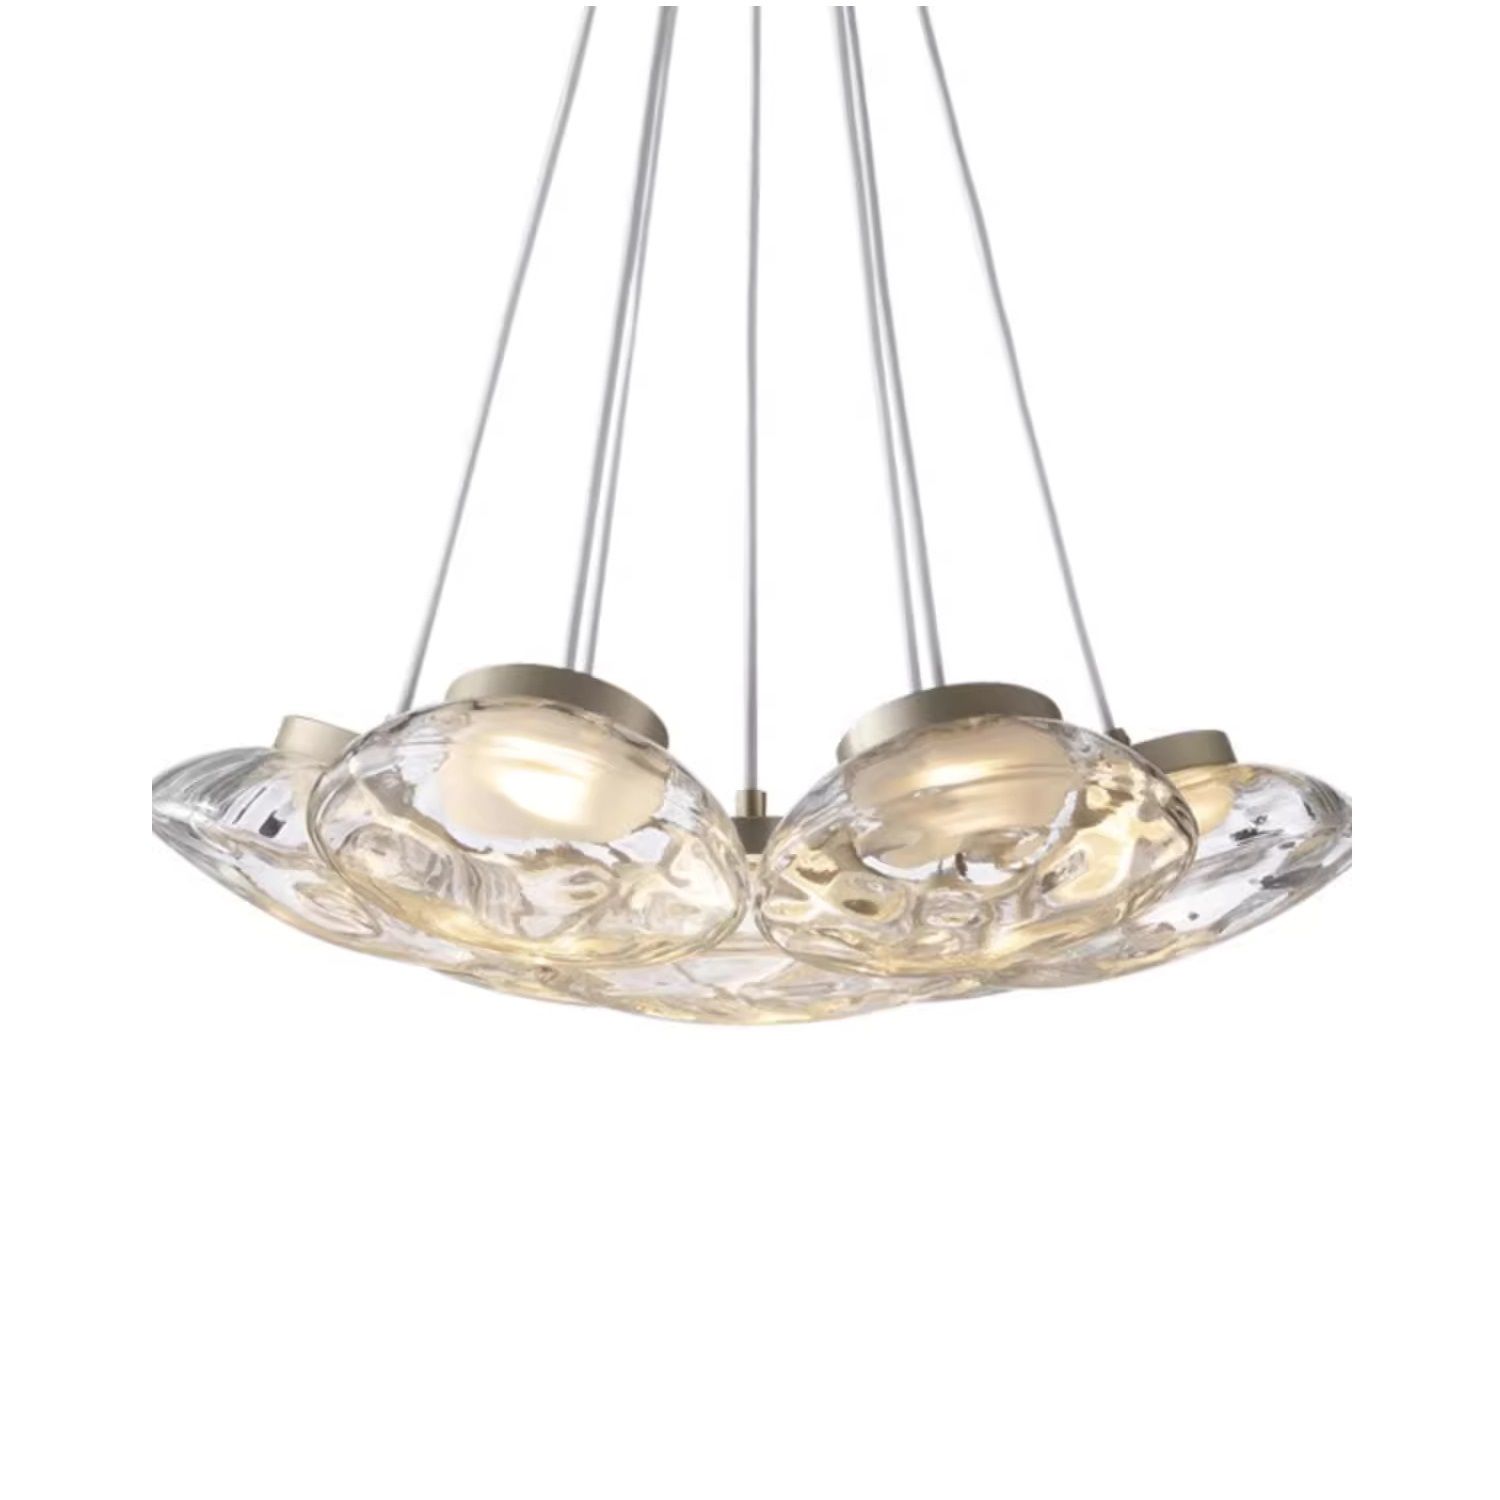 IKLER chandelier by Romatti